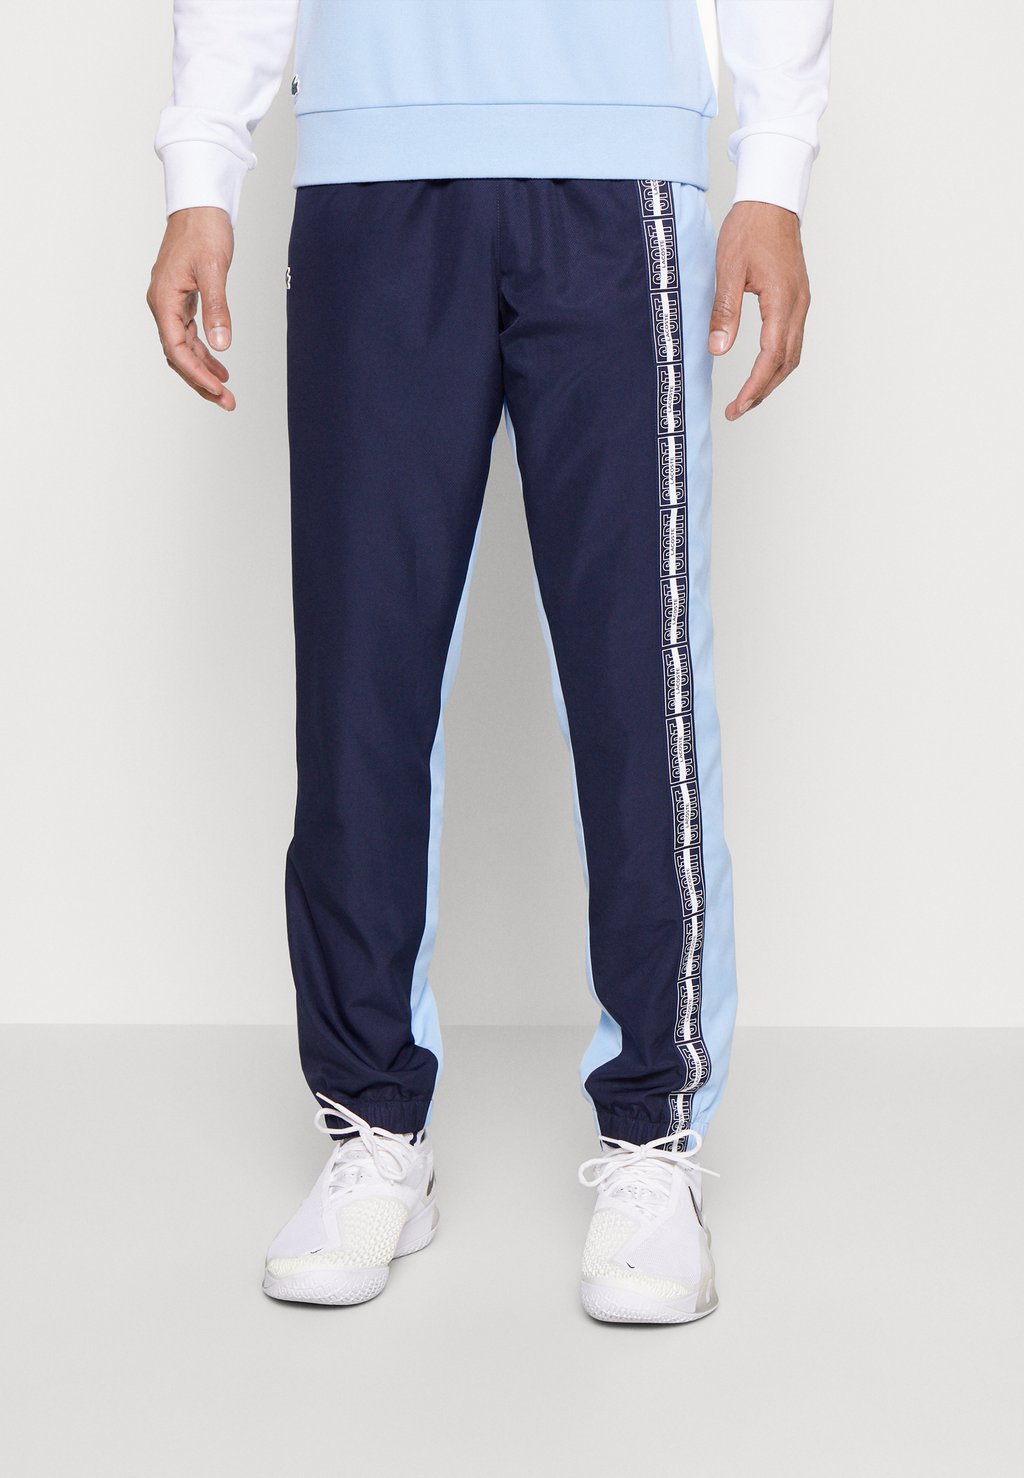 Спортивные брюки Tennis Pant Lacoste, цвет navy blue/overview спортивные брюки tennis pant lacoste цвет sinople navy blue